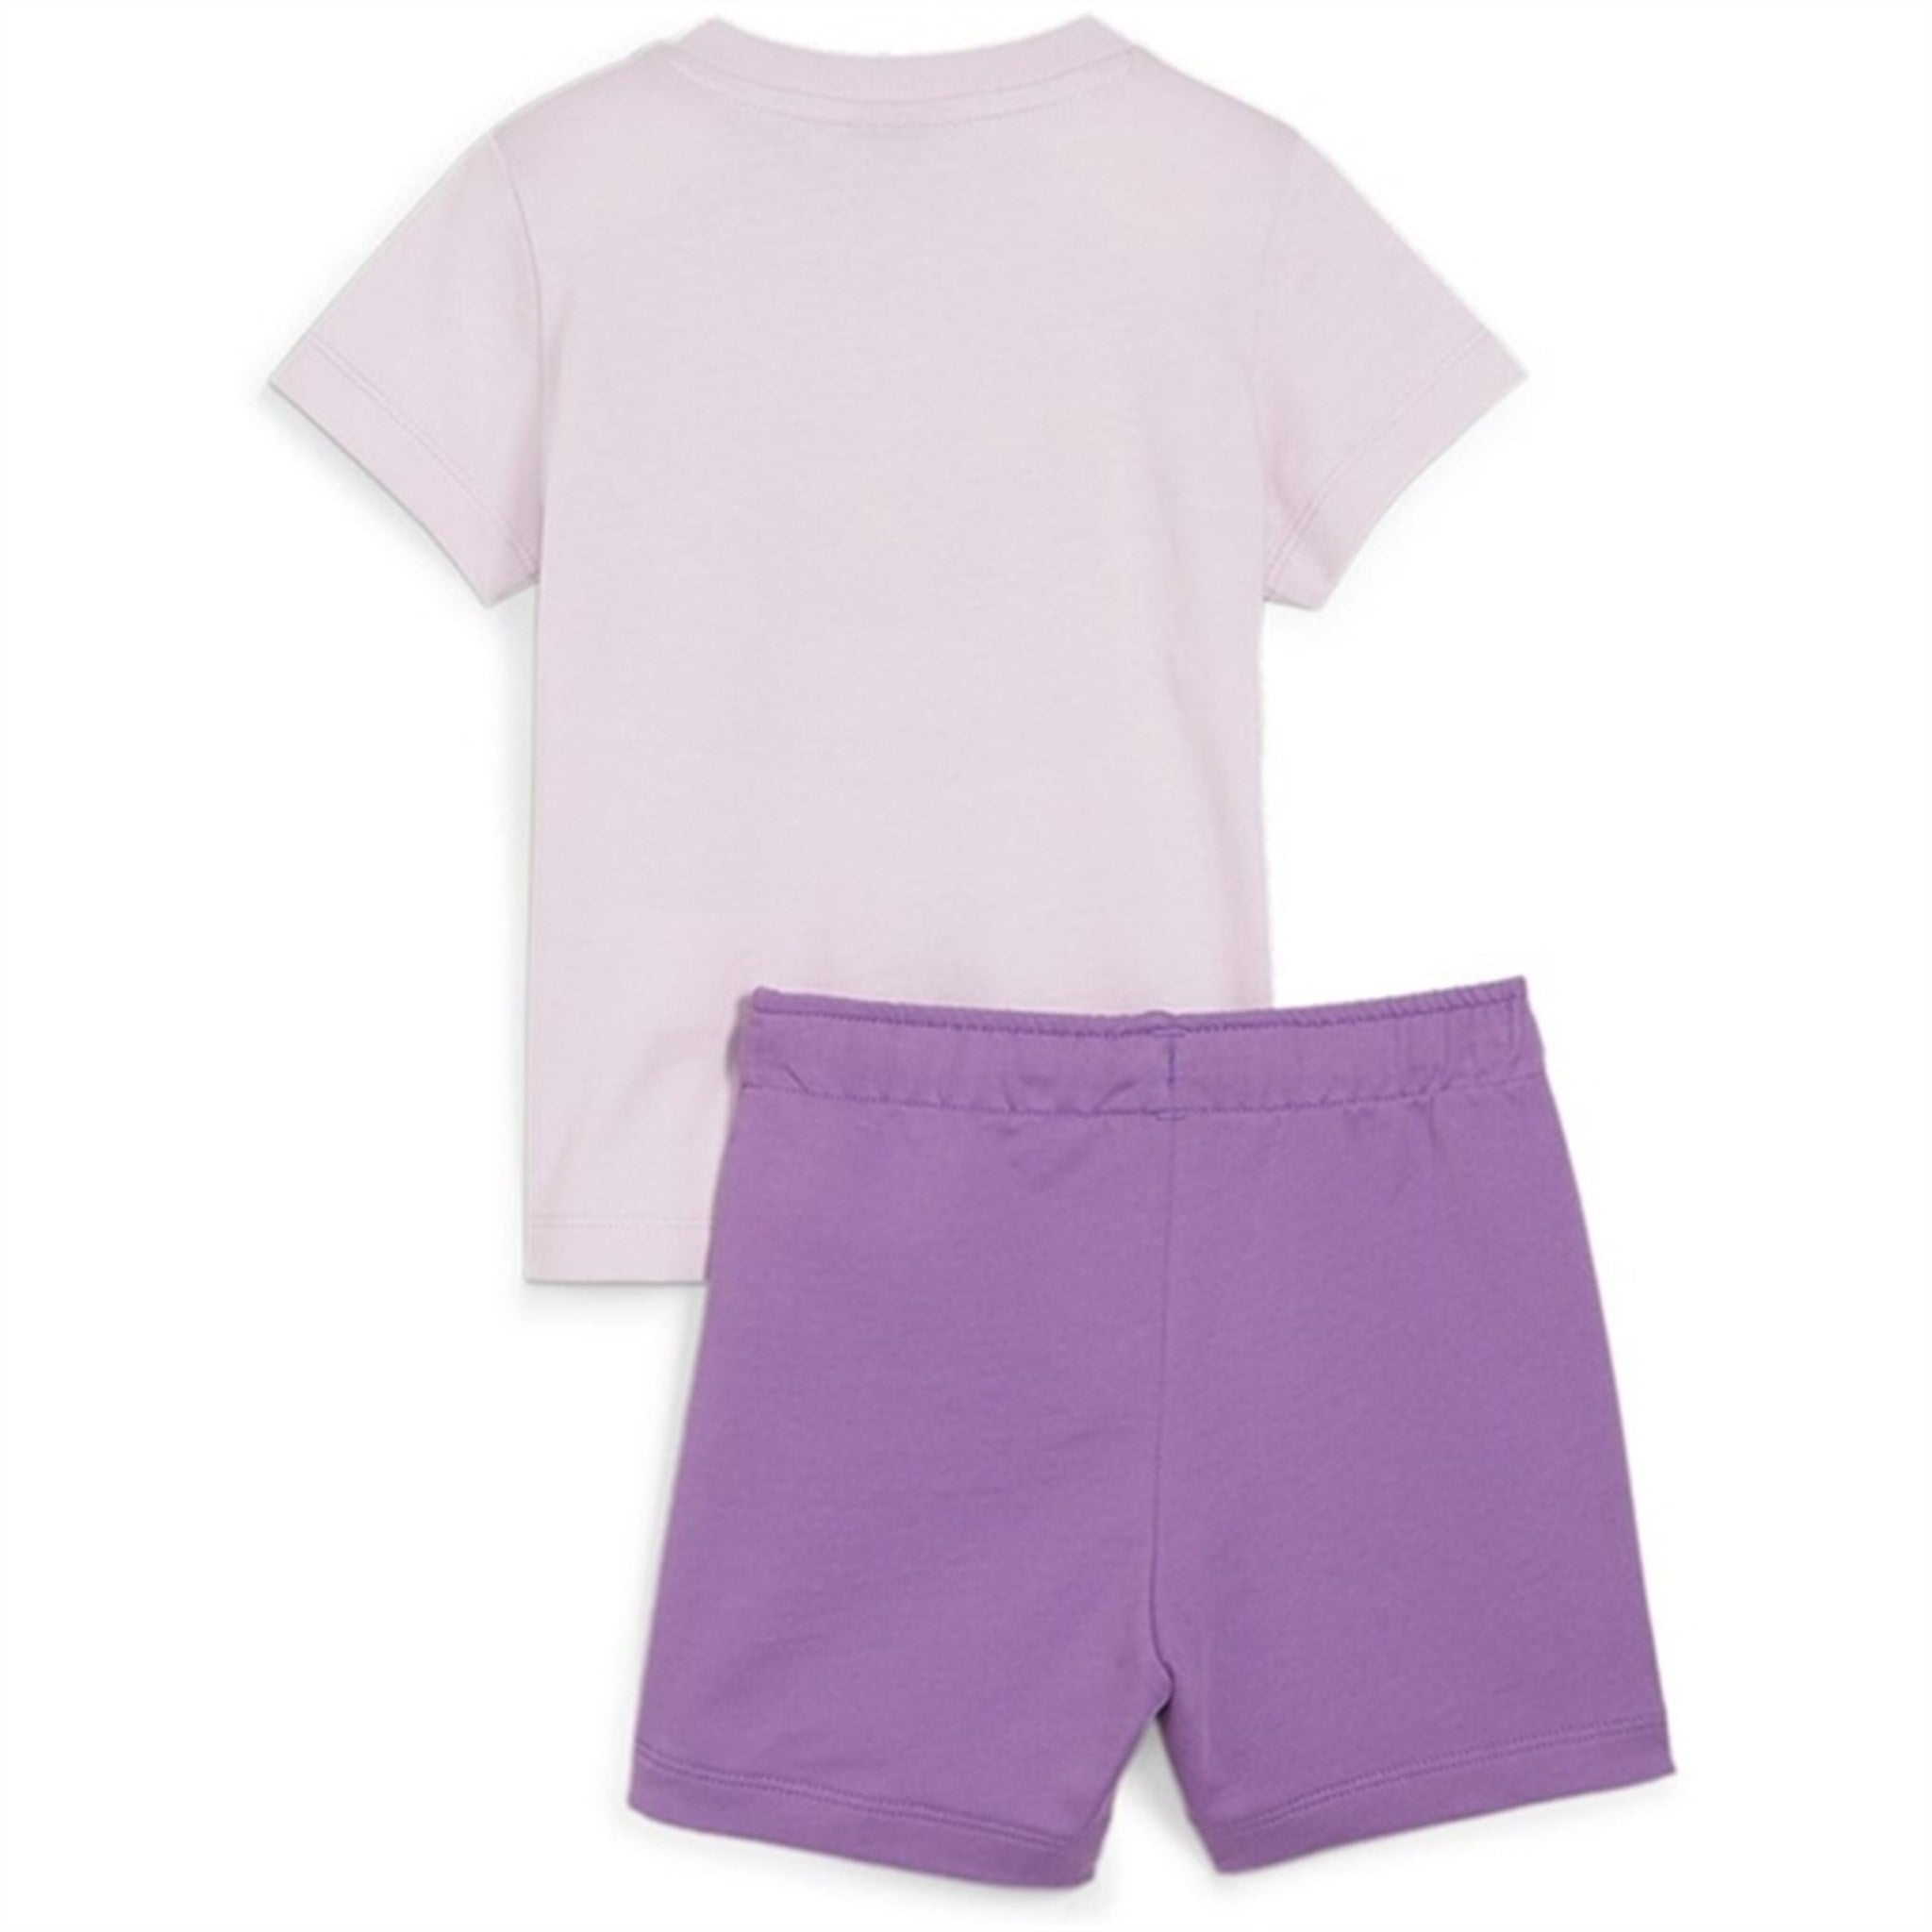 Puma Minicats T-Shirt And Shorts Set Purple 2